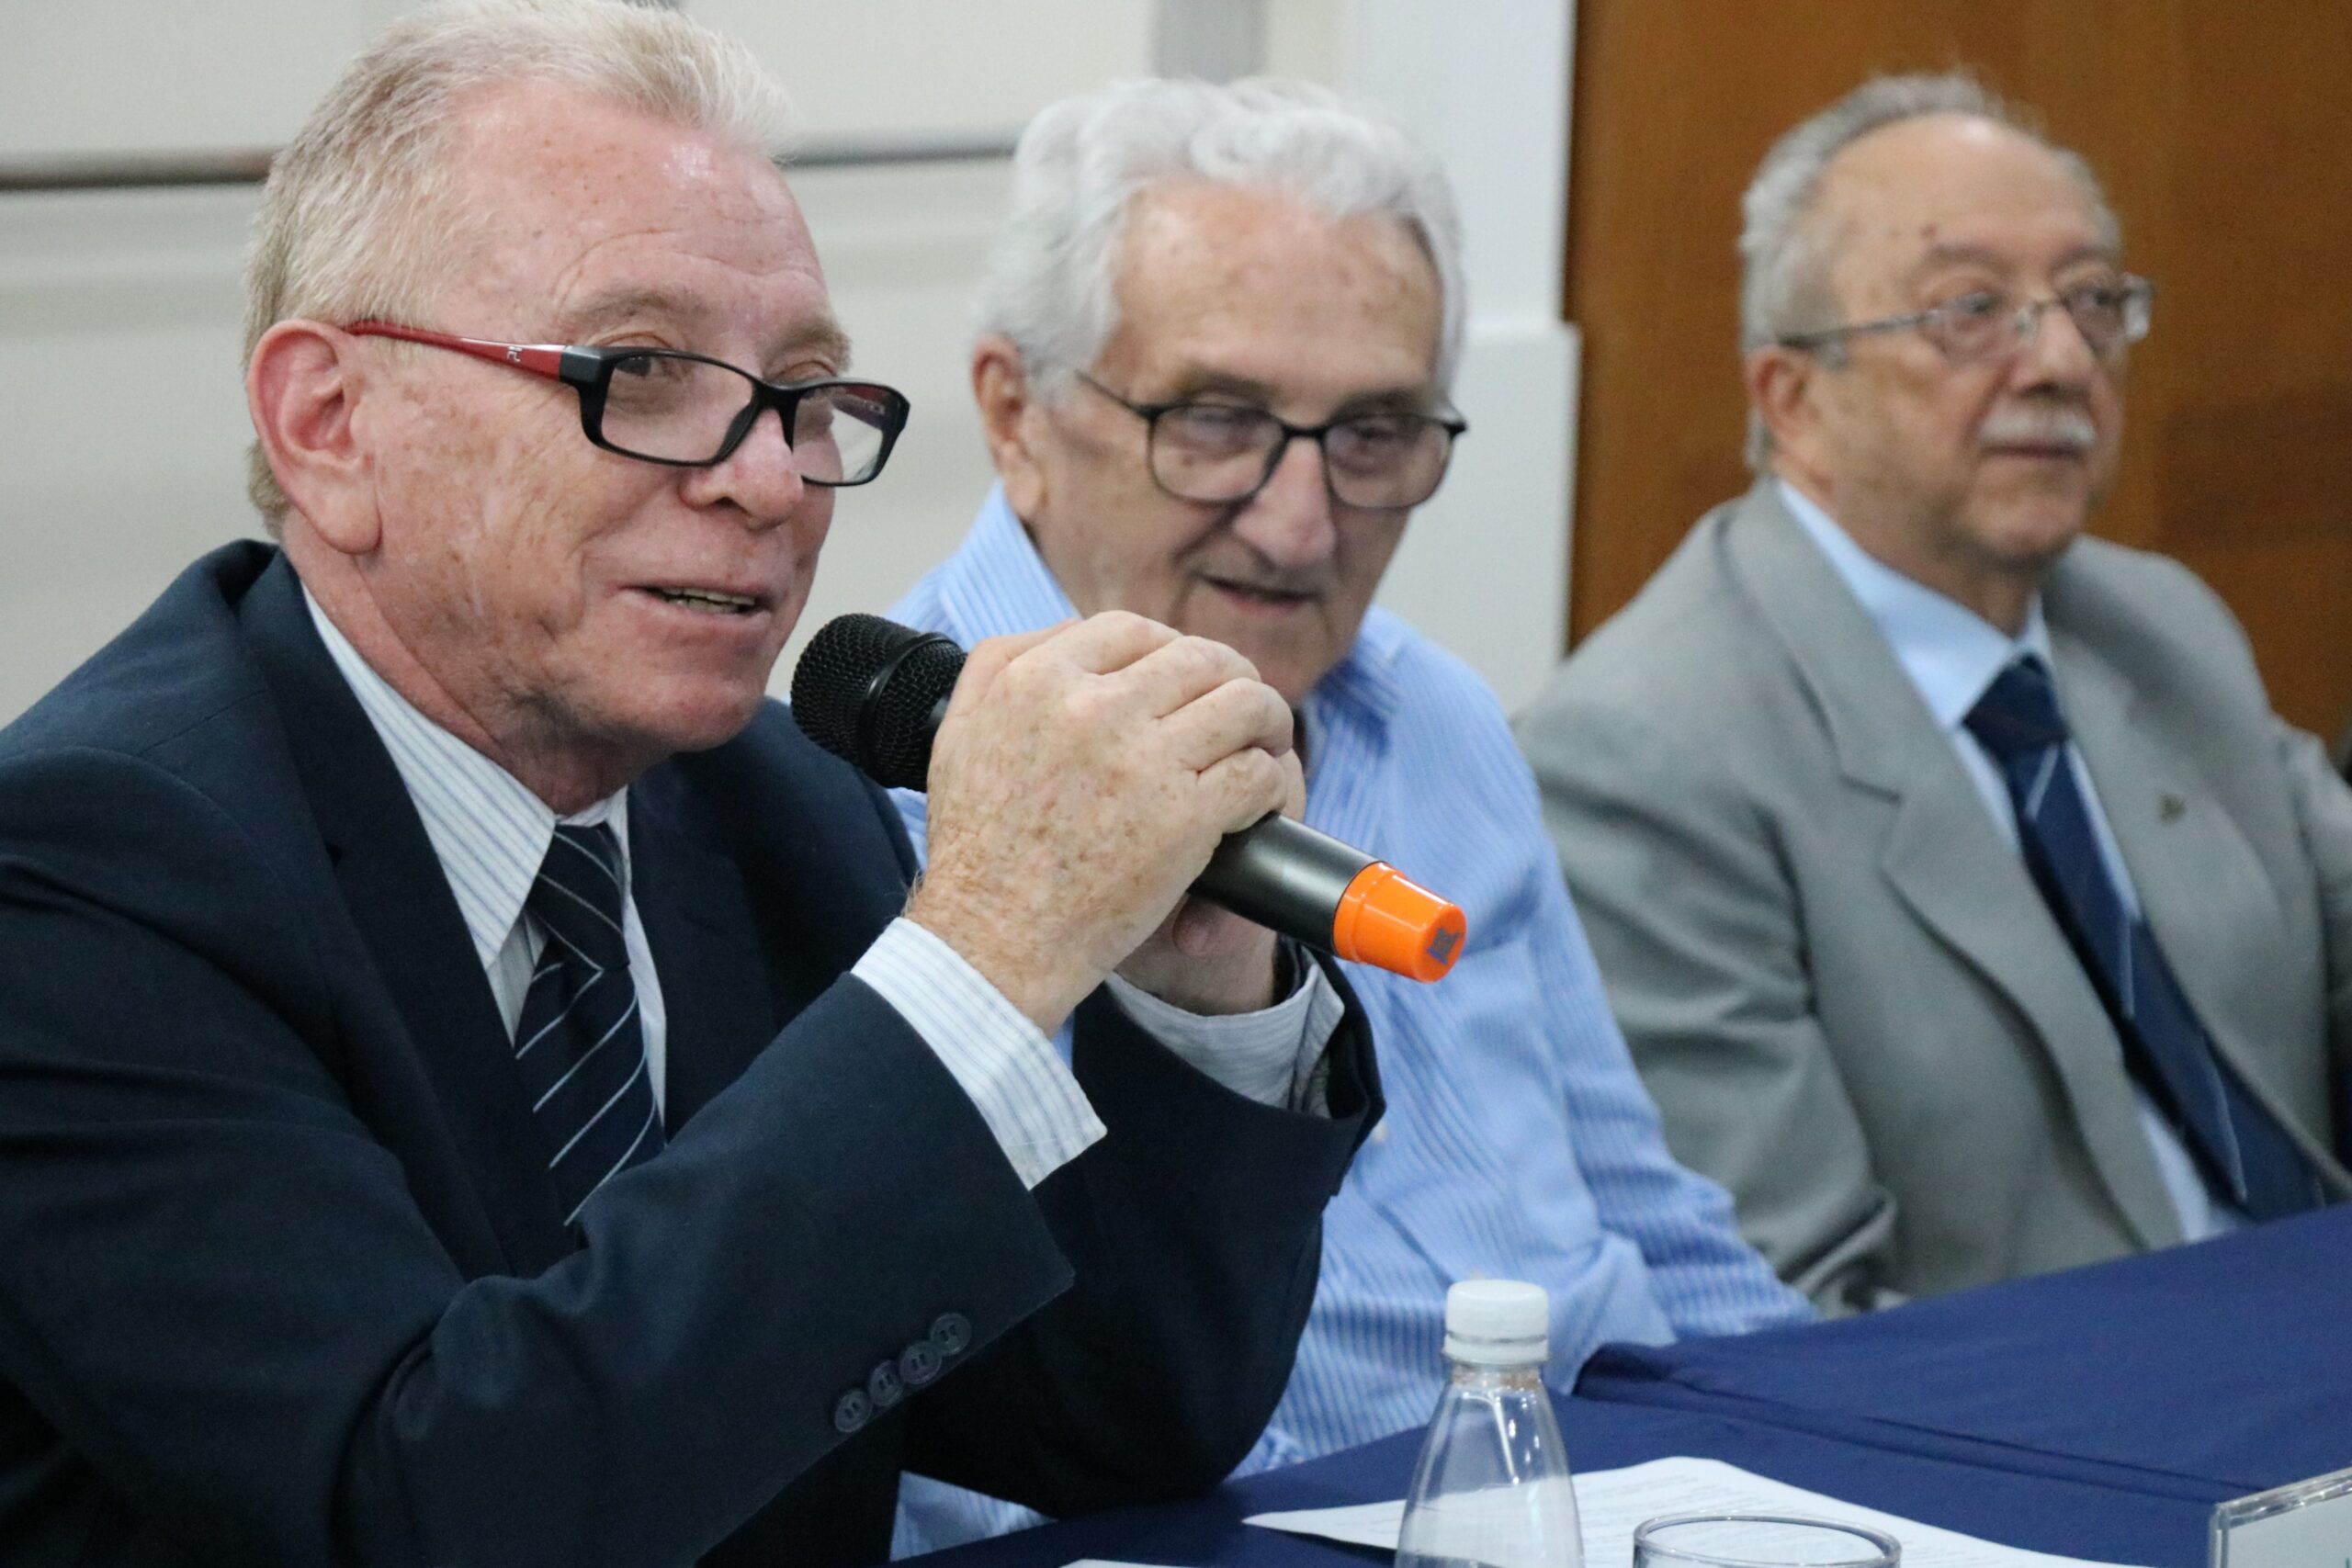 Na foto aparecem três homens sentados atrás de uma mesa com toalha azul. Em destaque está o presidente do CRMV-SP, que fala ao microfone, e em segundo plano está o presidente do CFMV e o representante regional de Campinas.